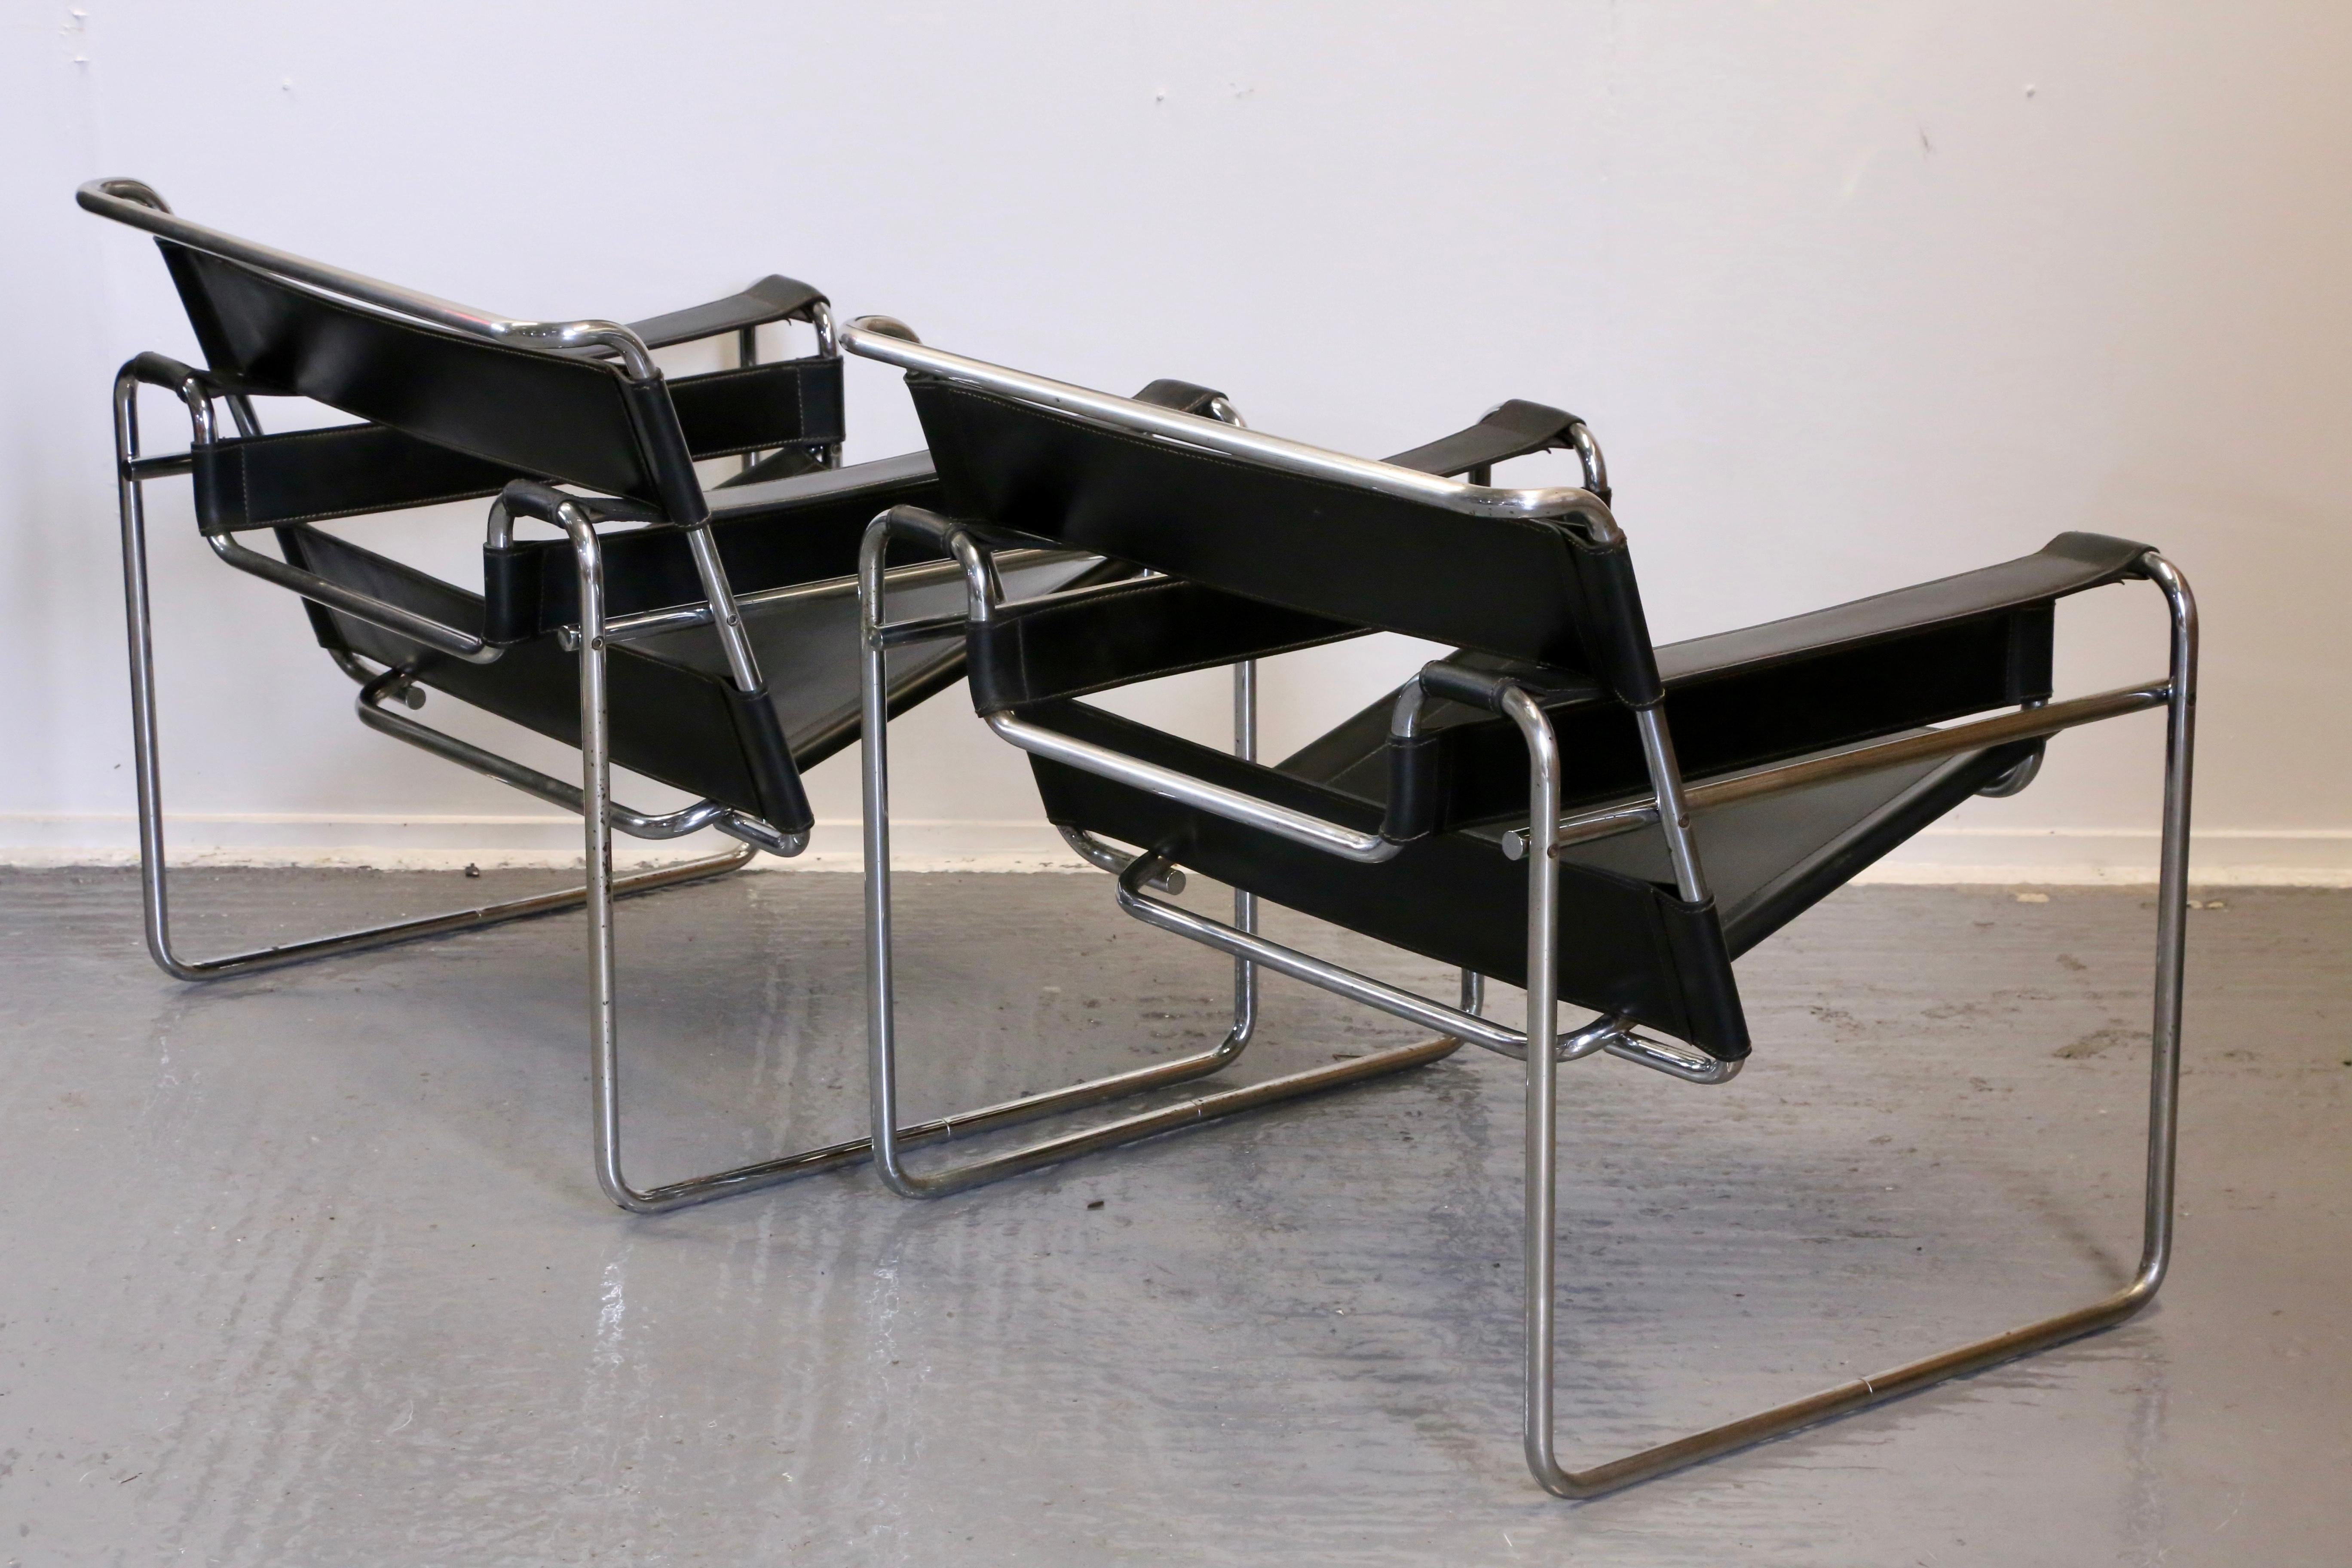 Remarquable paire de fauteuils de salon, conçus à l'origine au milieu des années 1920 par Marcel Breuer sous le nom de Model B3 Wassily chair. Ces fauteuils, dont le chrome est légèrement usé et qui présentent des piqûres et des points de rouille,